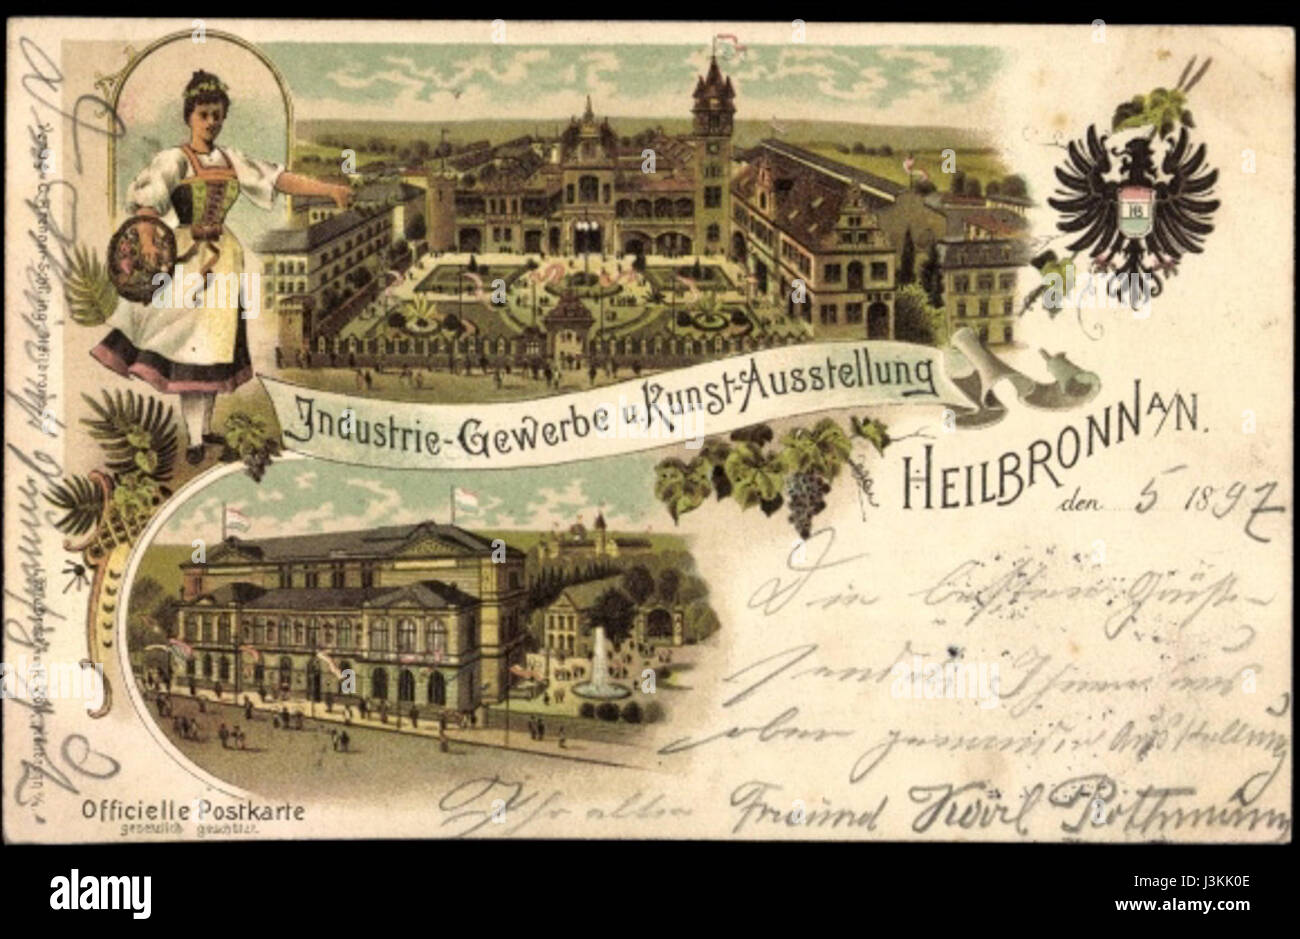 Heilbronn Gewerbeausstellung 1897 Stock Photo